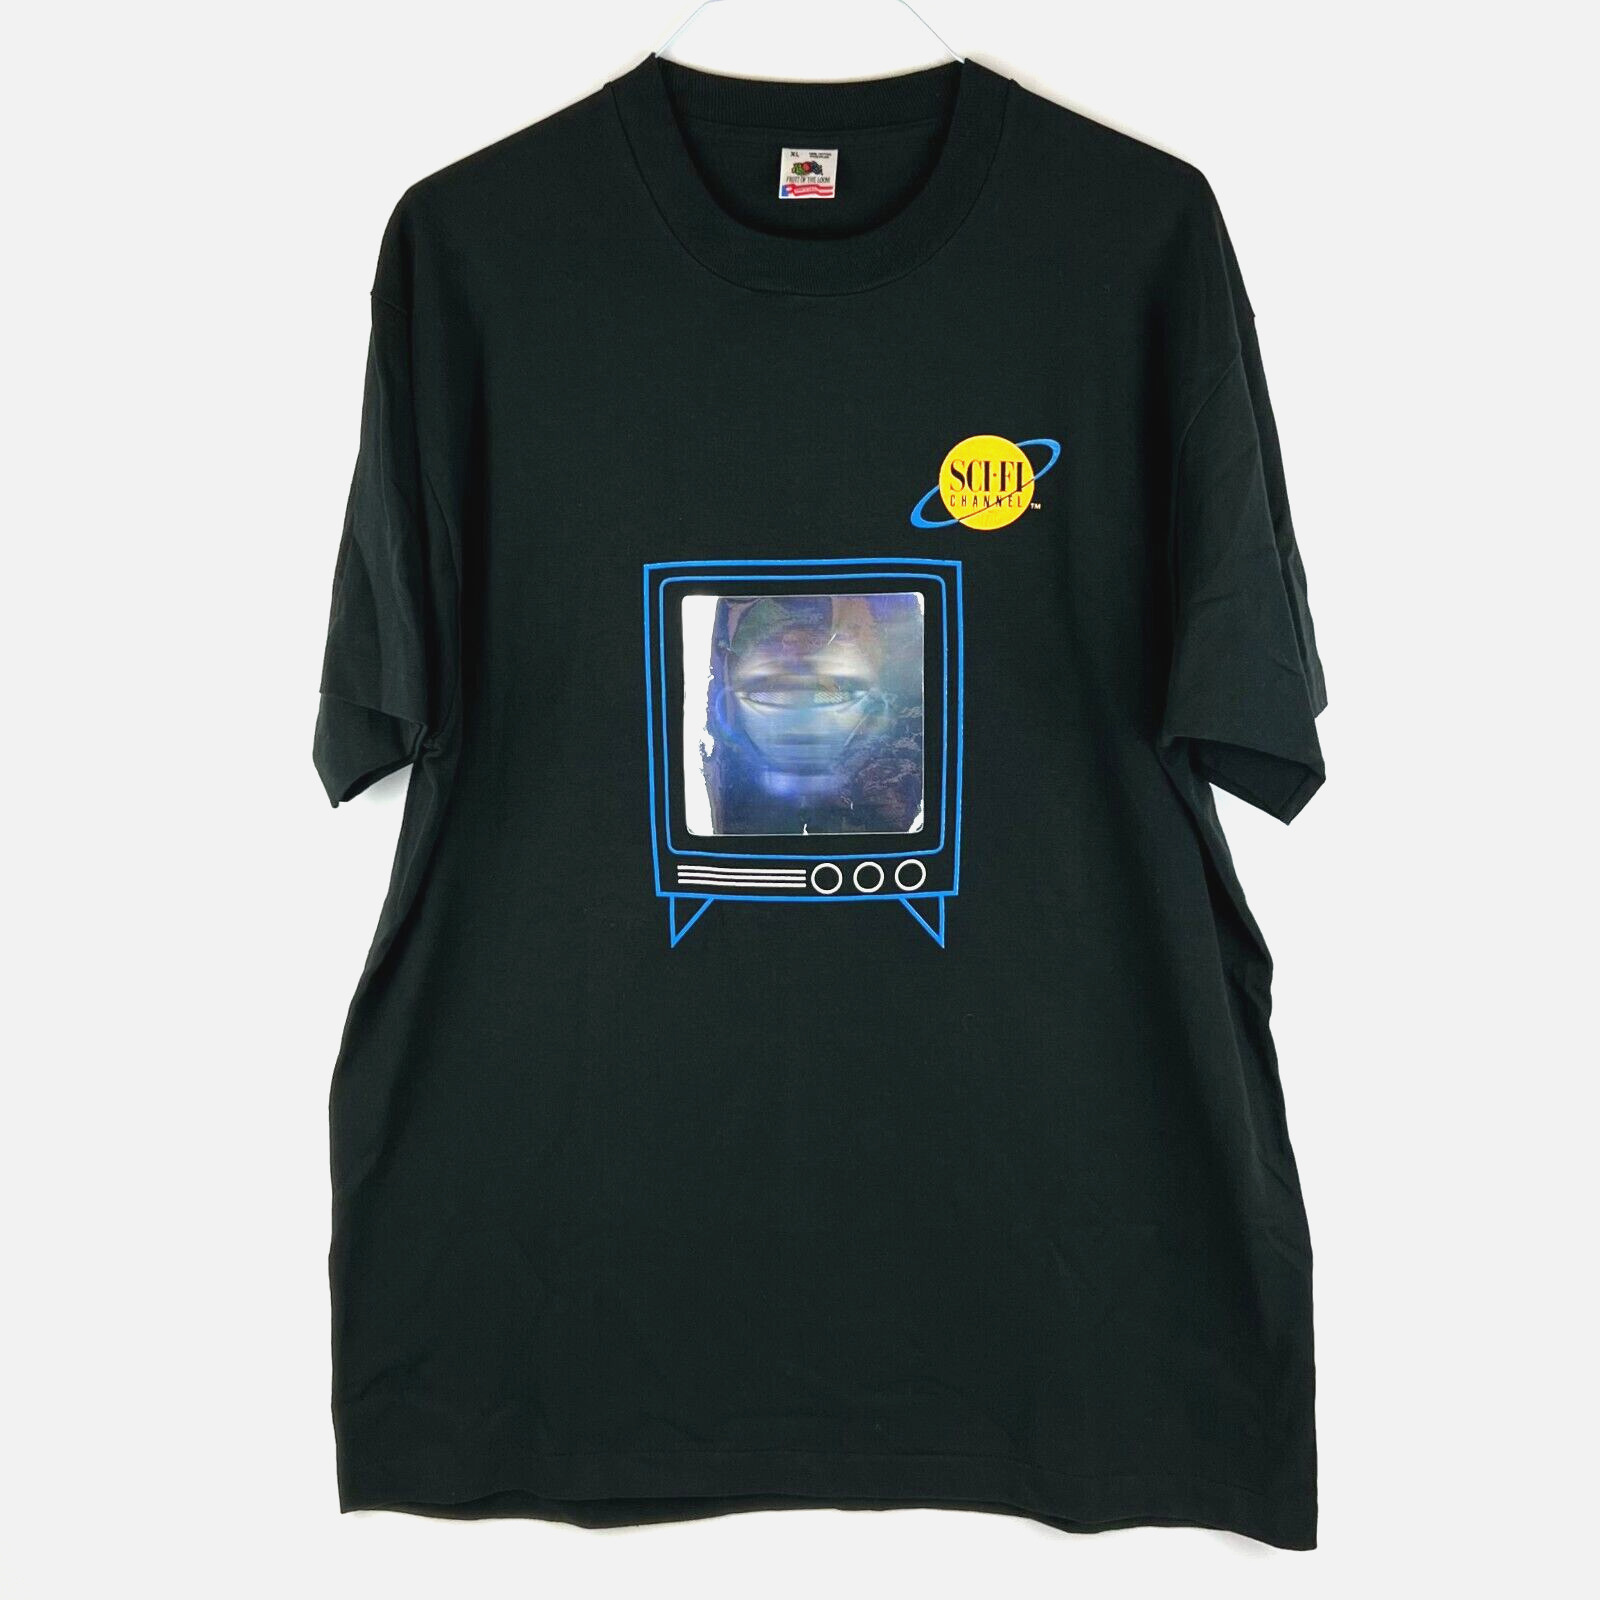 RARE Vintage Sci-Fi Channel T Shirt Original 1990s Science Fiction Hologram XL